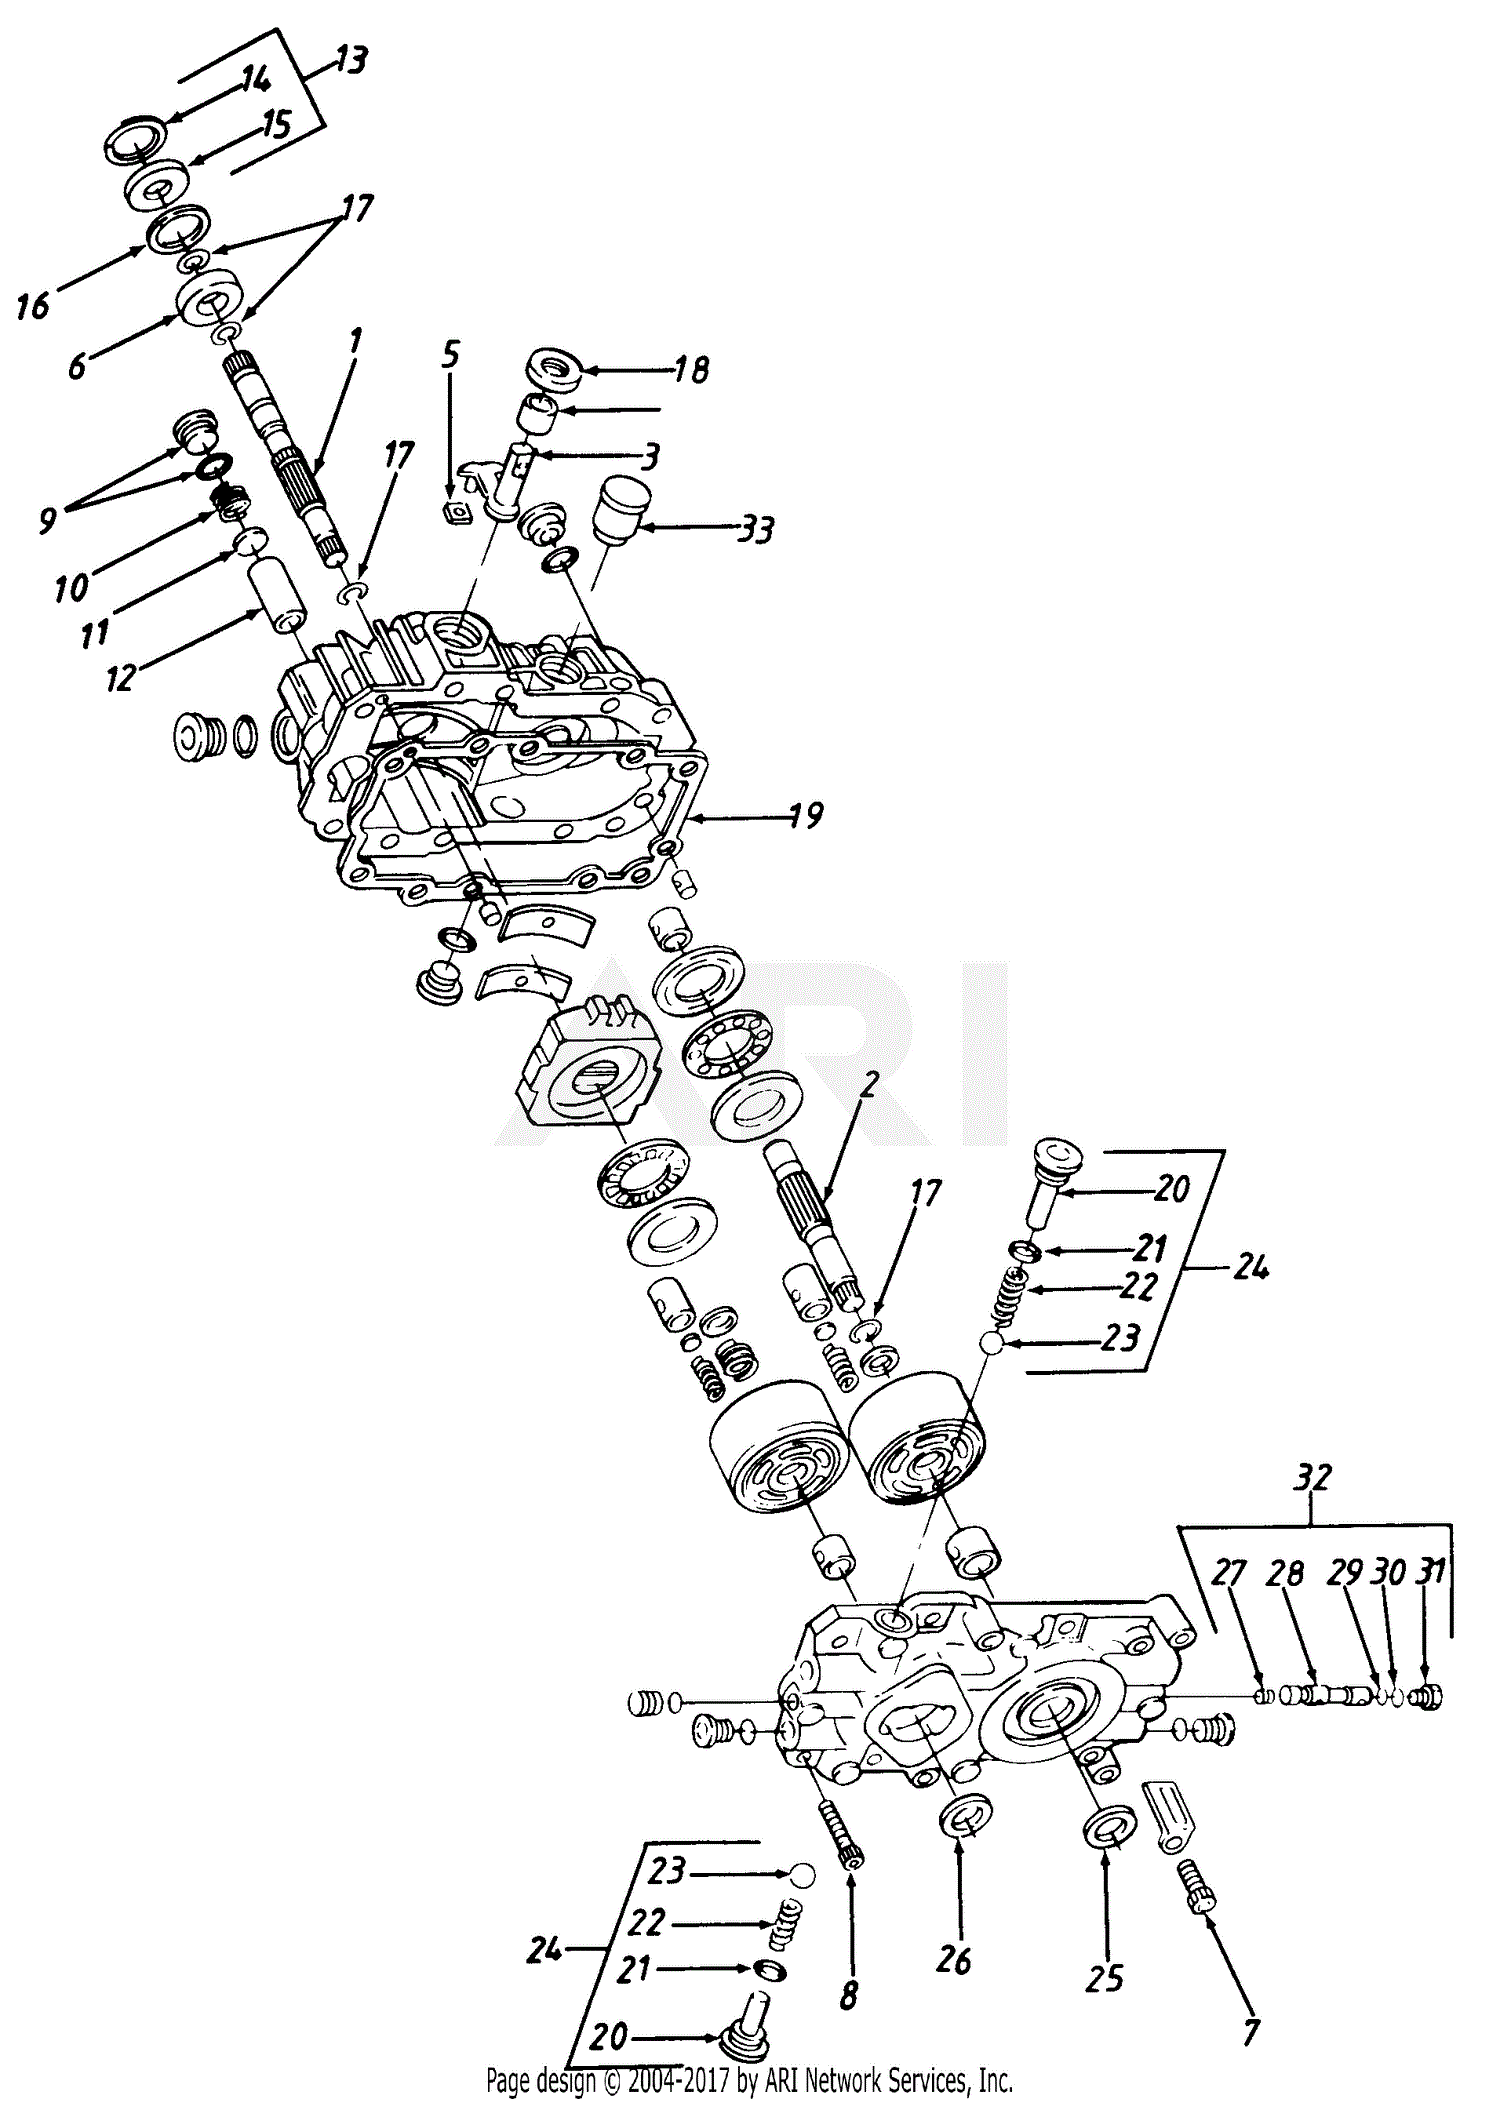 33 Cub Cadet Hydrostatic Transmission Diagram Wiring Diagram List